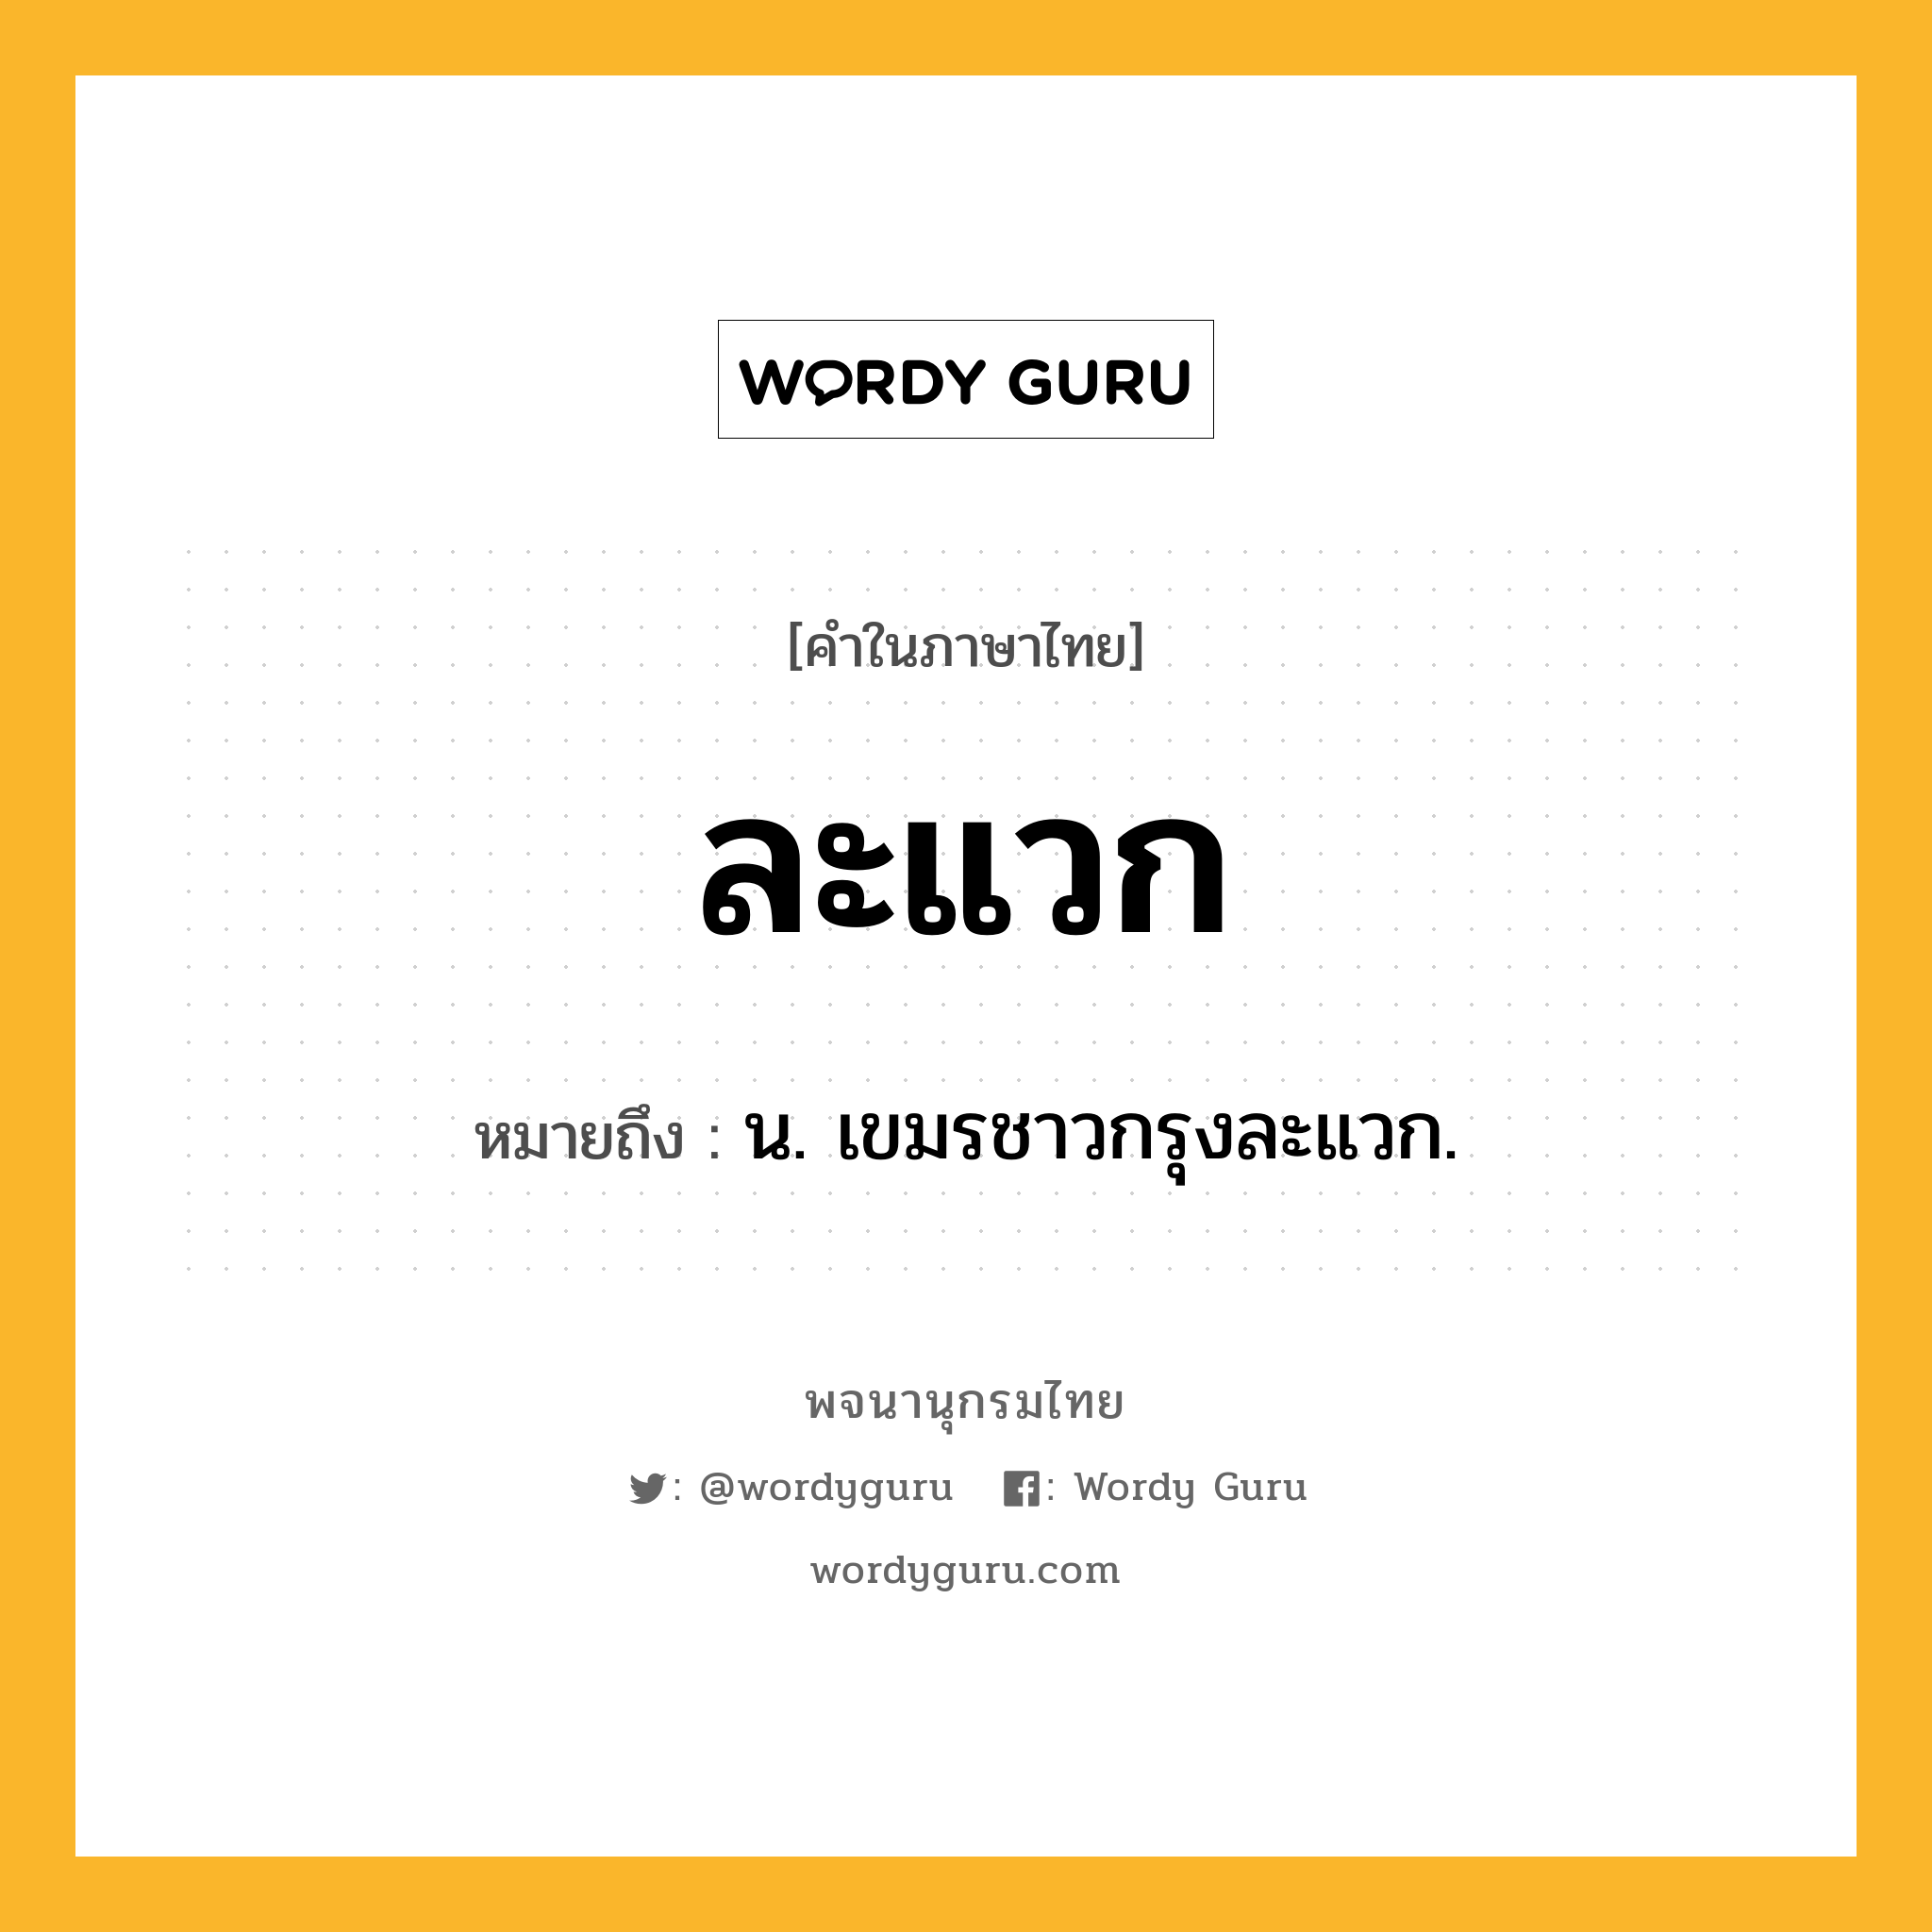 ละแวก ความหมาย หมายถึงอะไร?, คำในภาษาไทย ละแวก หมายถึง น. เขมรชาวกรุงละแวก.